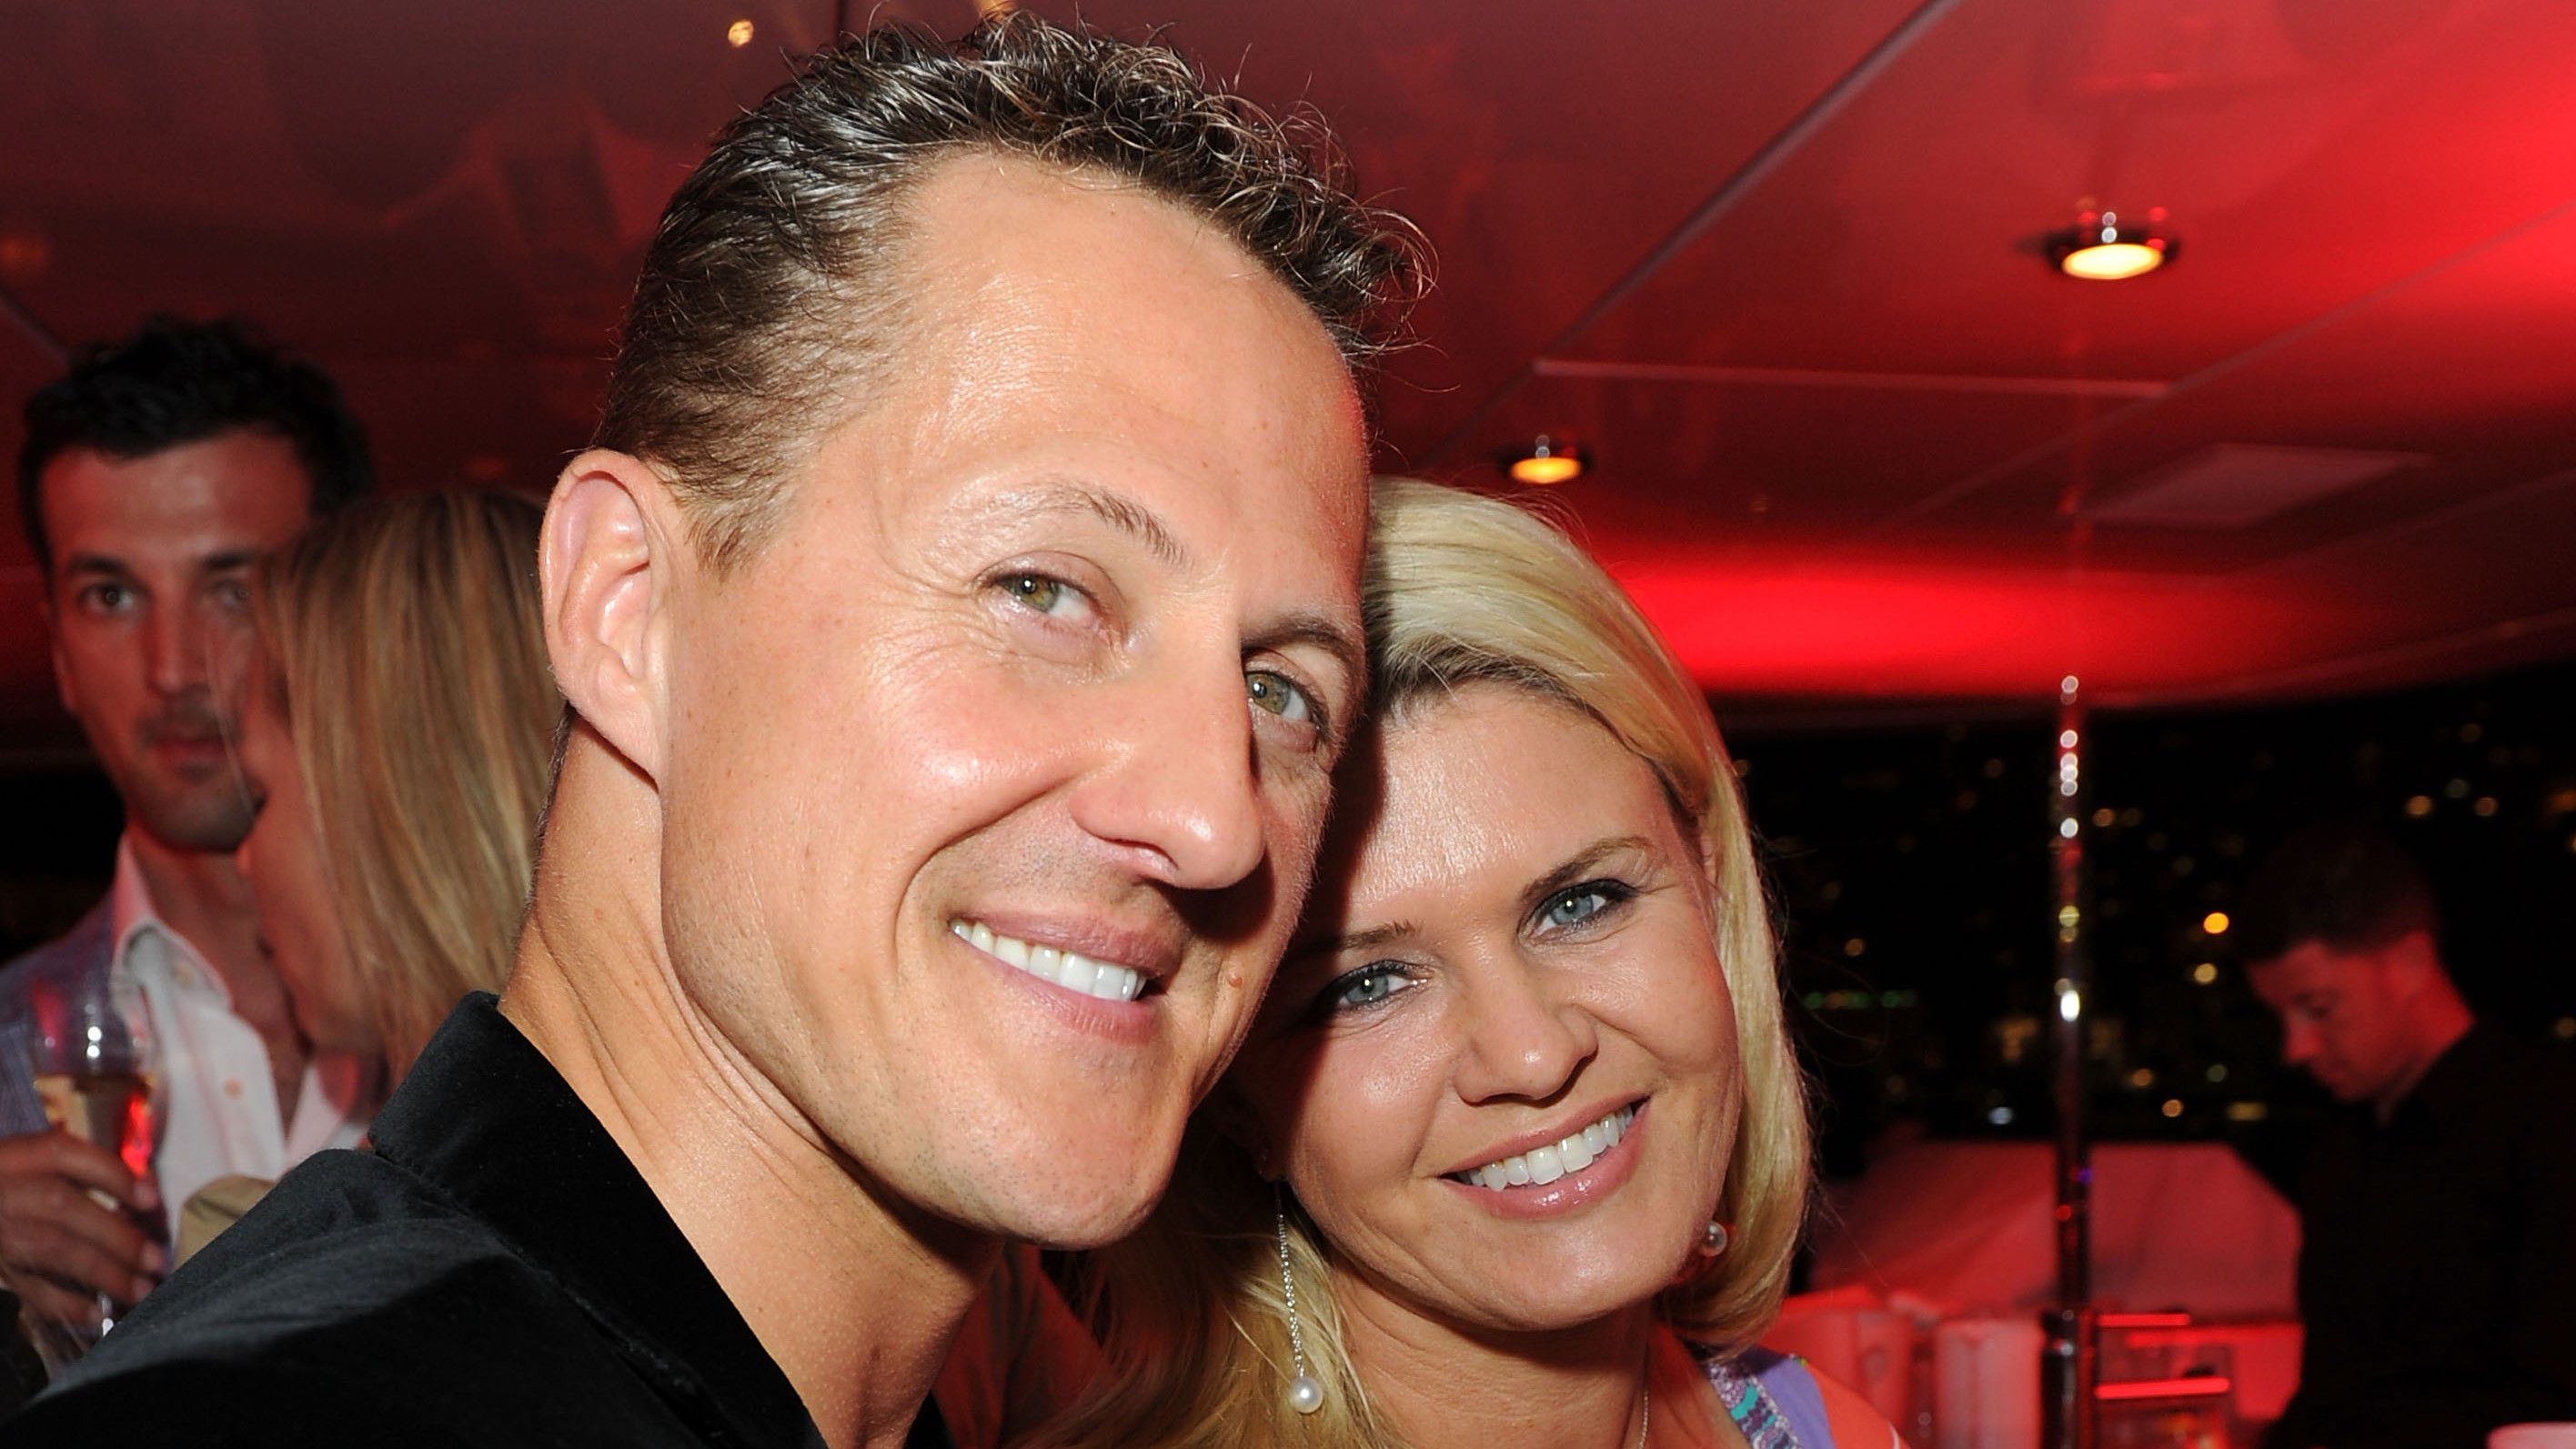 Michael Schumacher családja beperli a lapot az álinterjú miatt